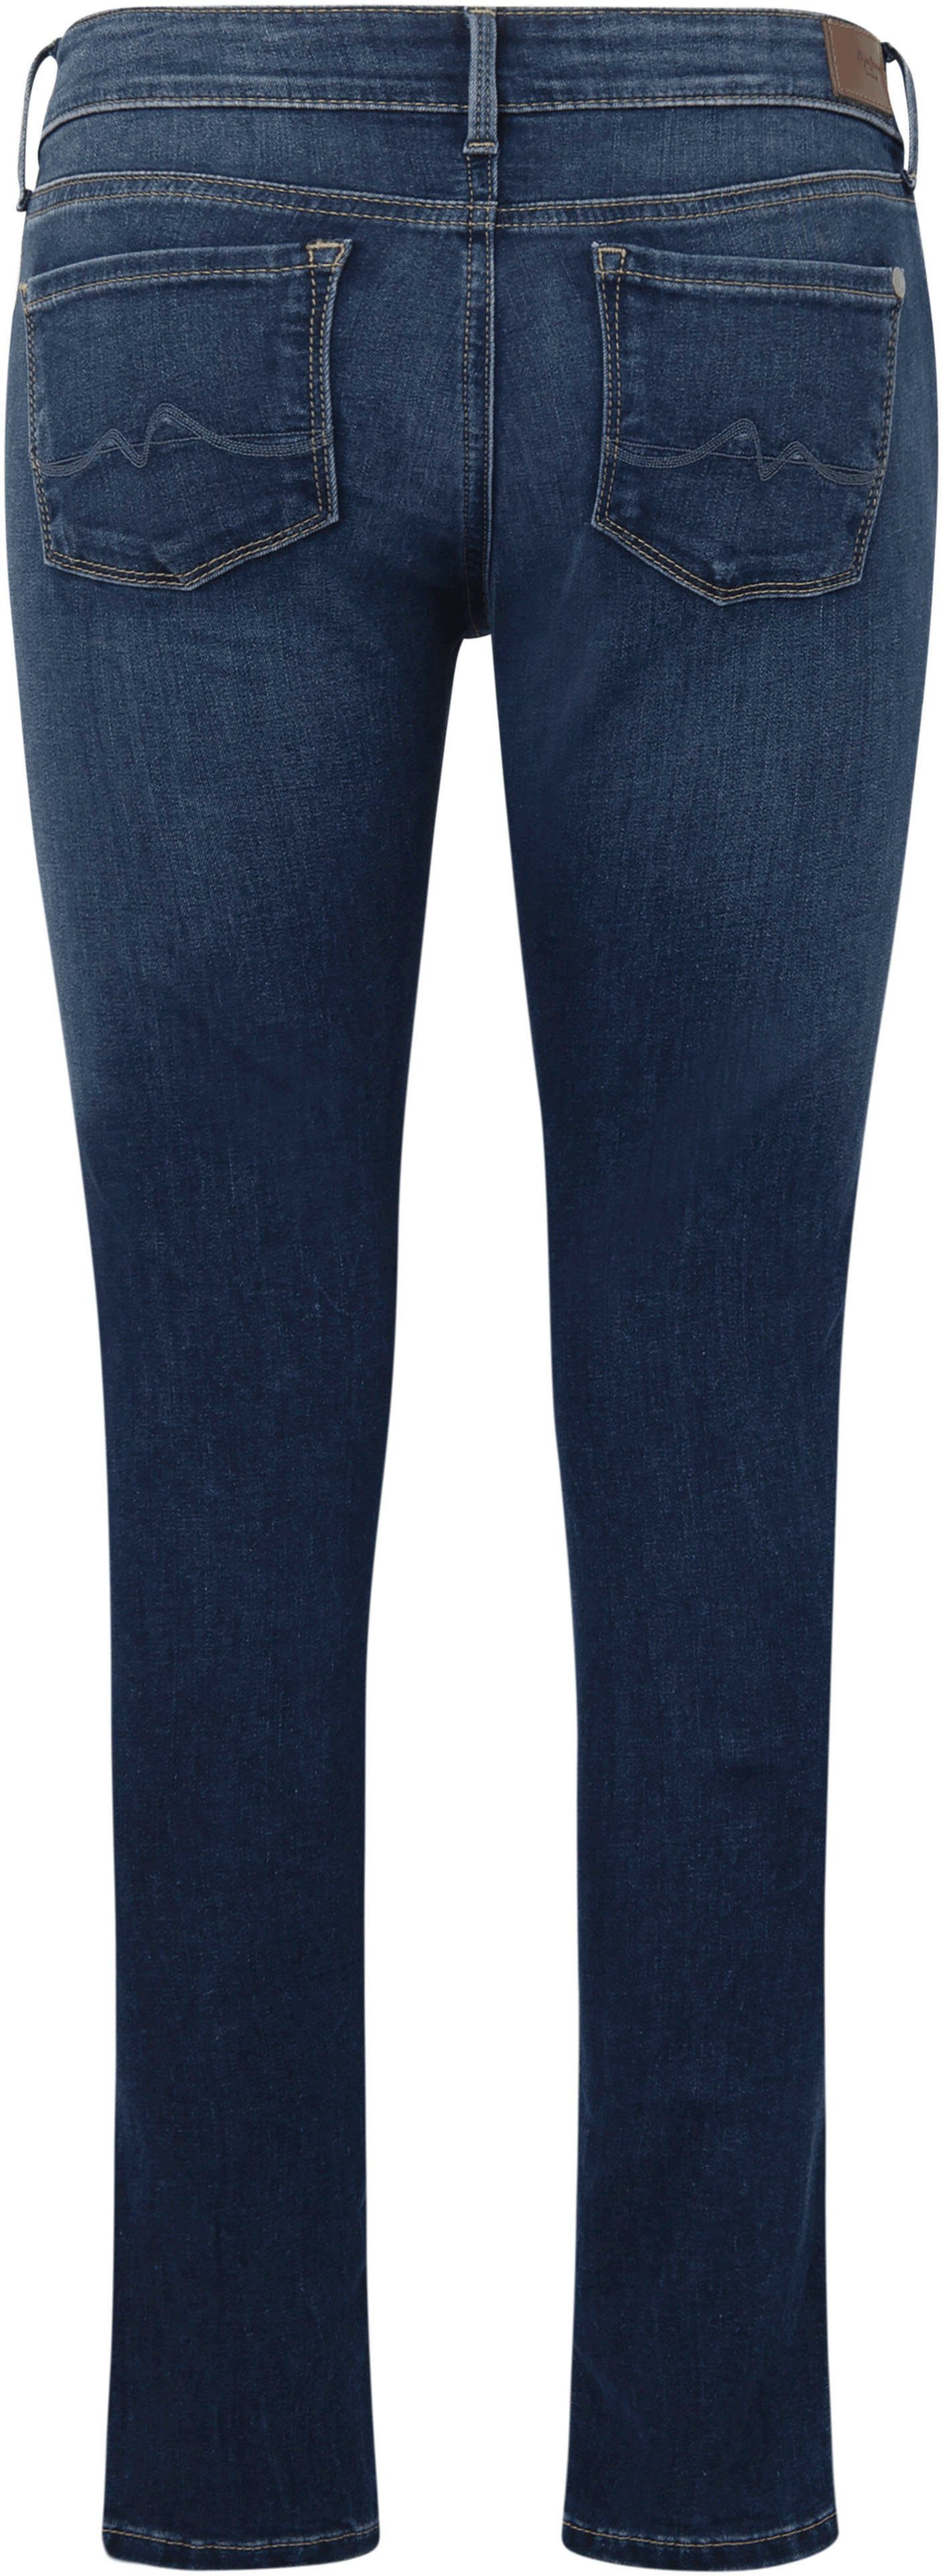 Stretch-Anteil Bund Skinny-fit-Jeans 5-Pocket-Stil dark SOHO worn im und used Jeans 1-Knopf Pepe mit